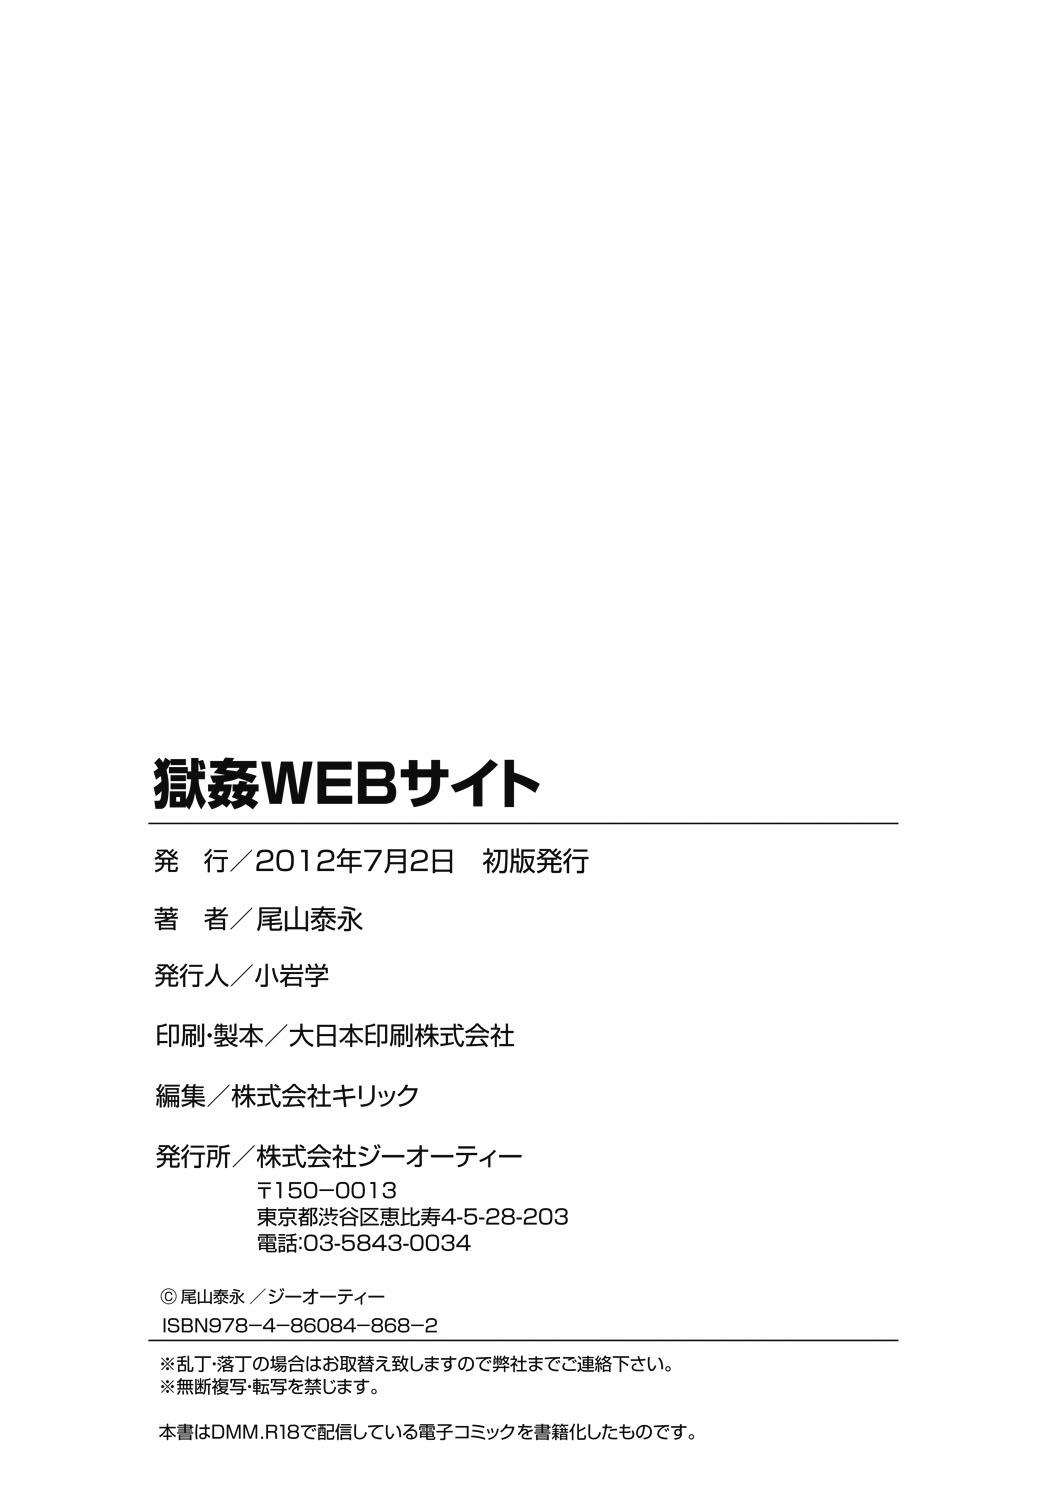 Gokukan Website 184